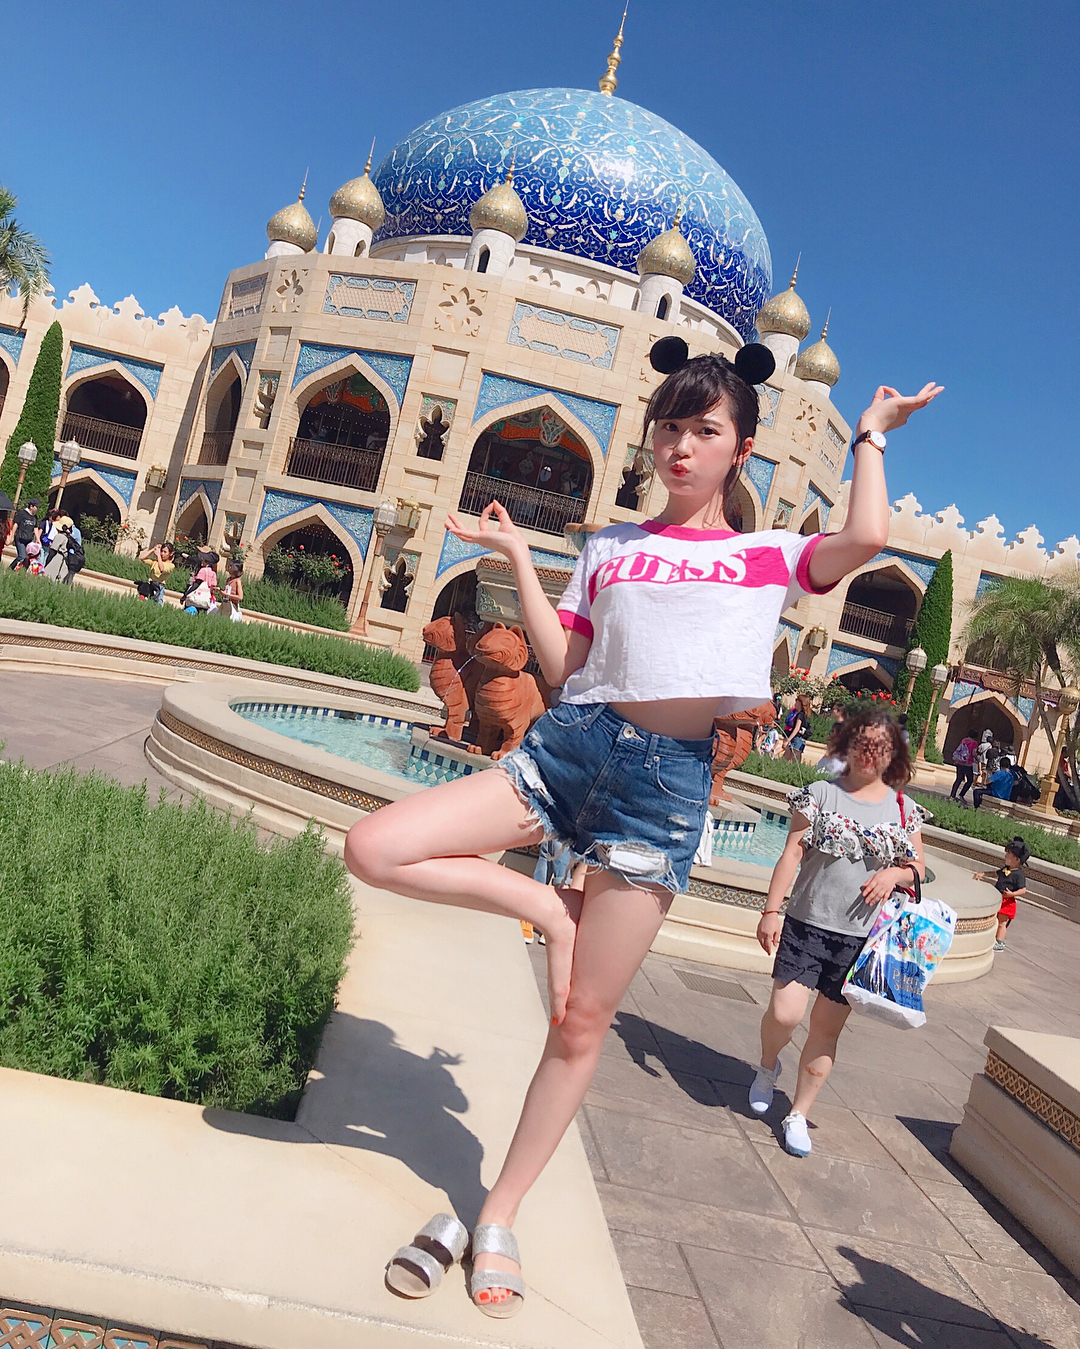 伊藤奈月 アラビアンコーストにて アラビアン風なポーズ わたしの中のアラビアンな 足のイメージはこれ笑 Today Inpark Disneysea Moe Zine